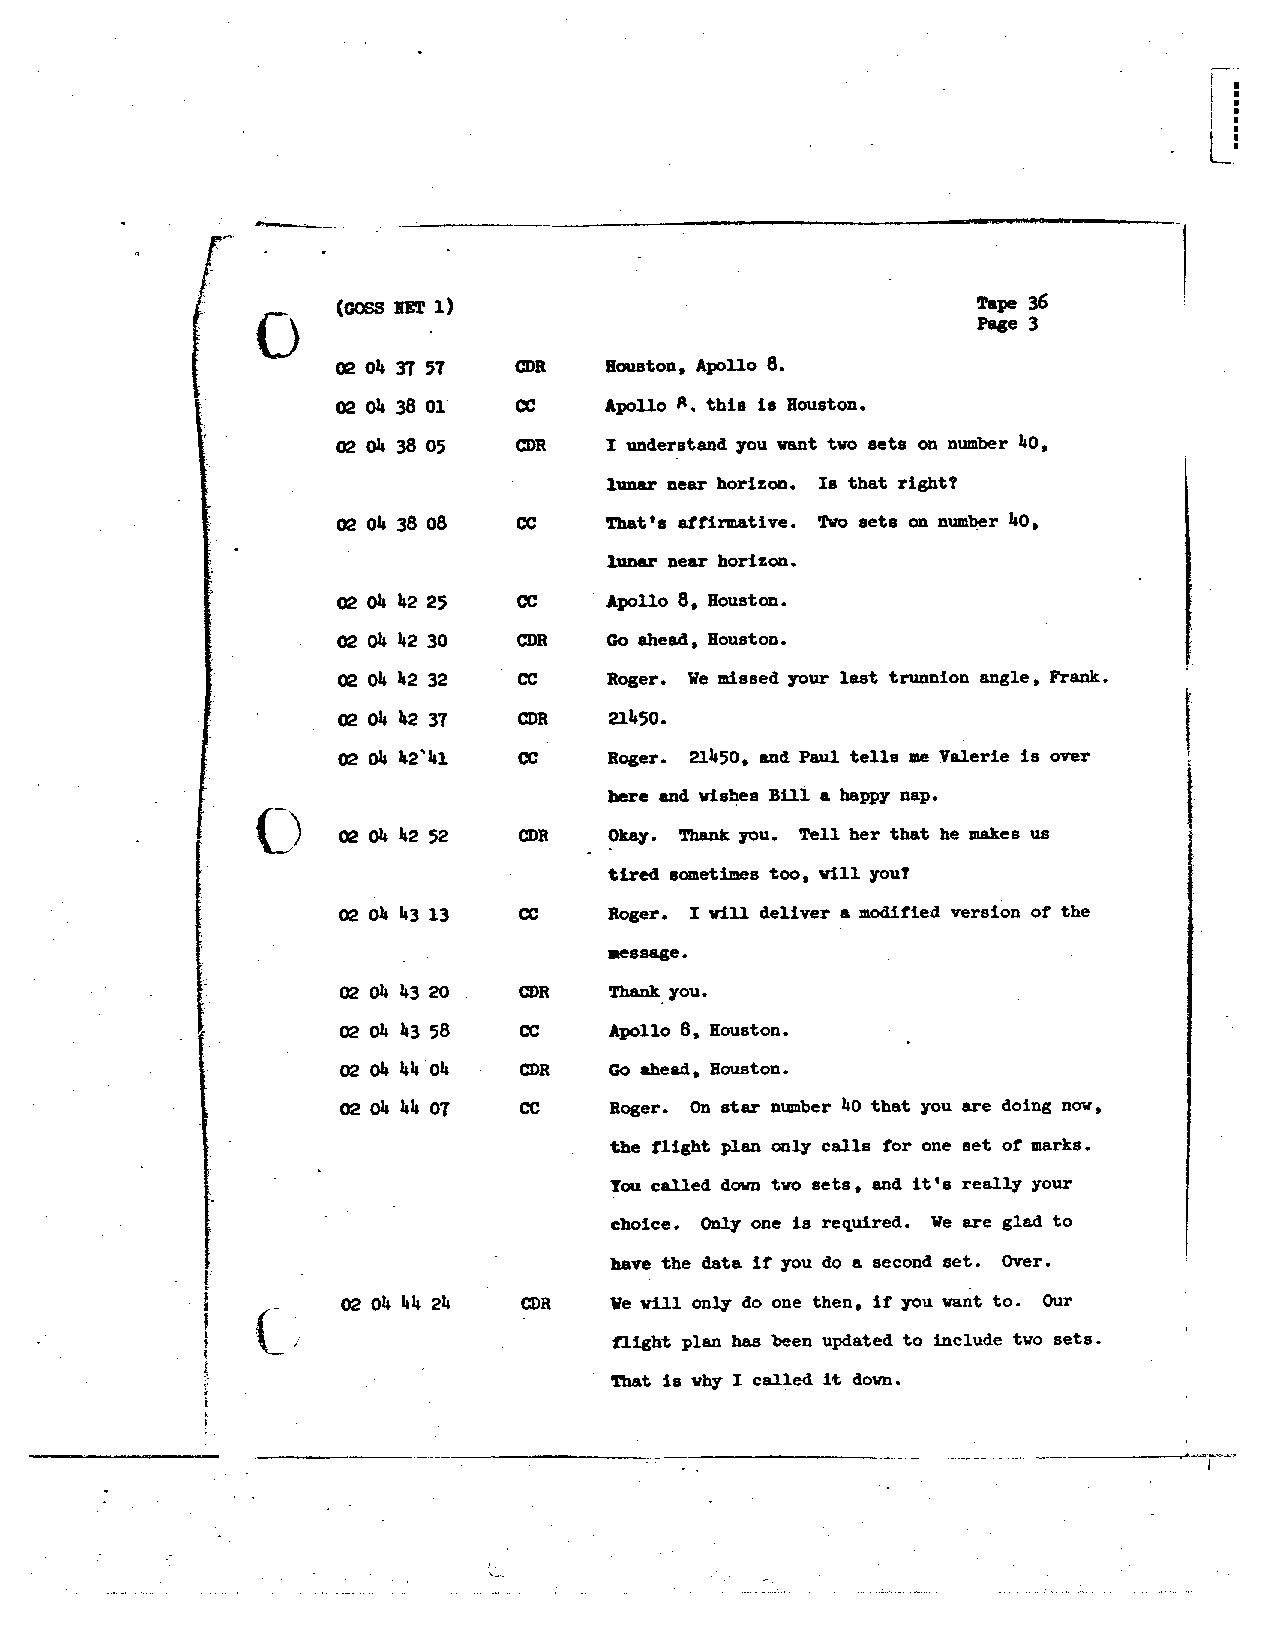 Page 273 of Apollo 8’s original transcript